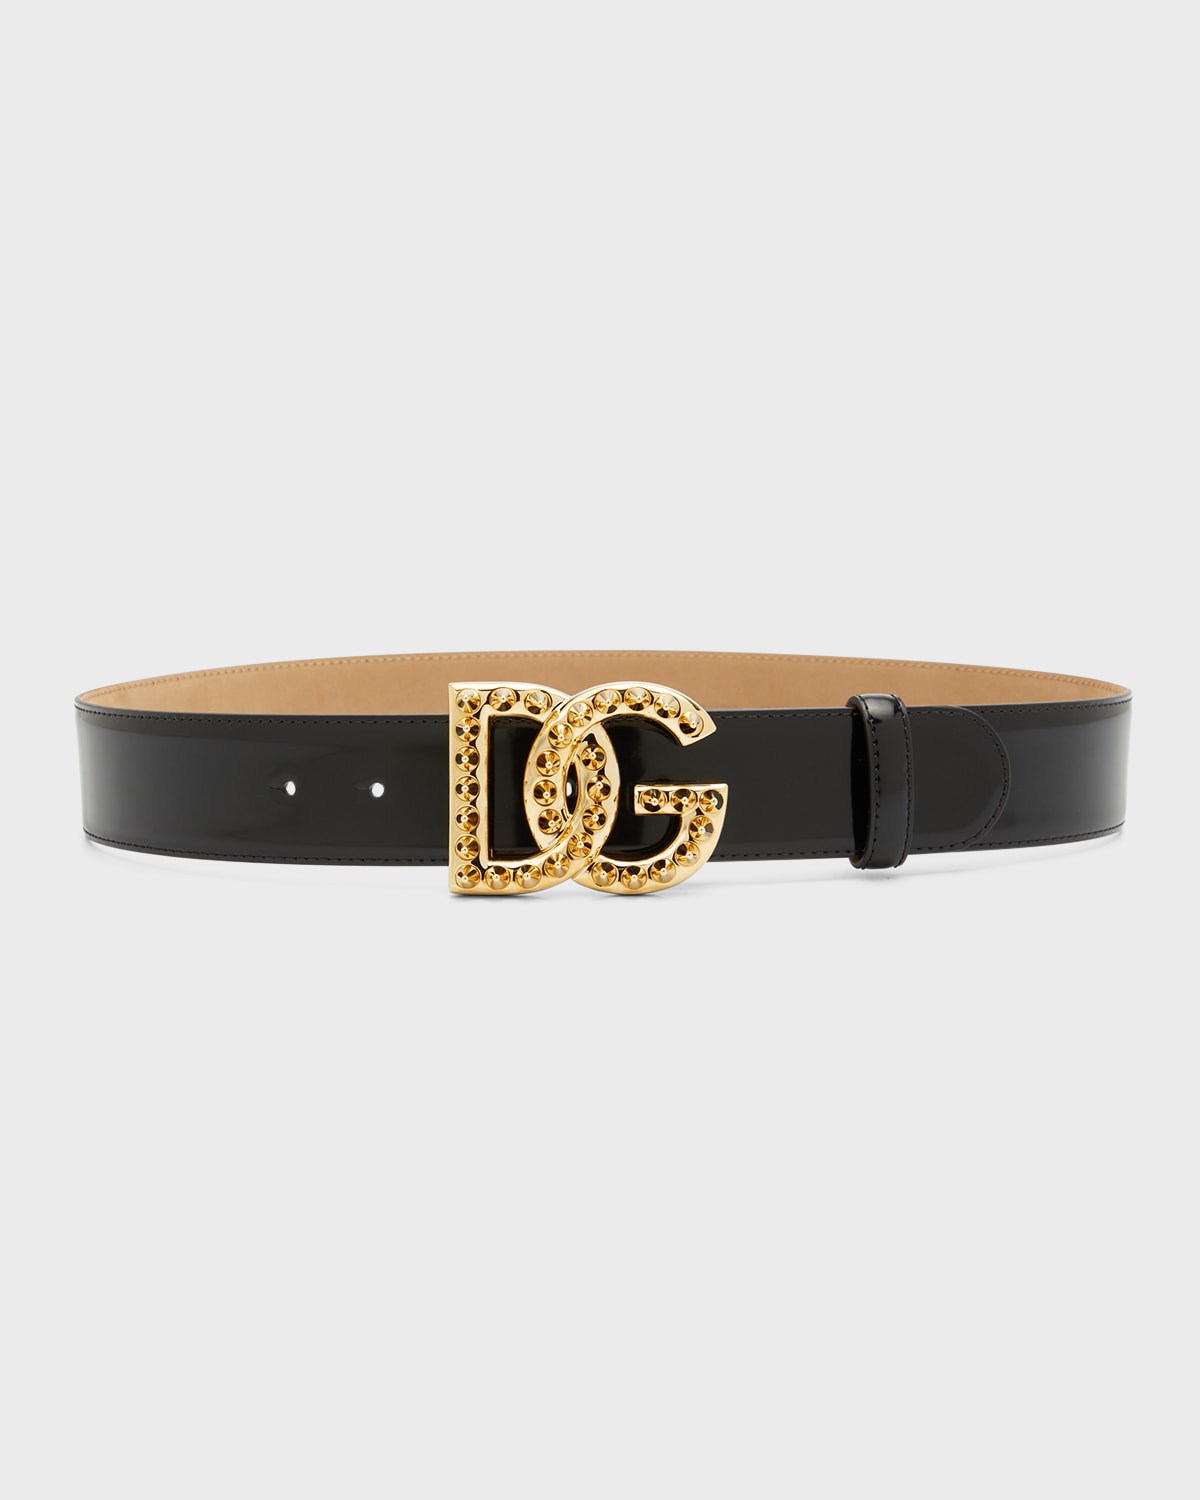 Dolce&Gabbana Silver Interlocking DG Leather Belt | Neiman Marcus